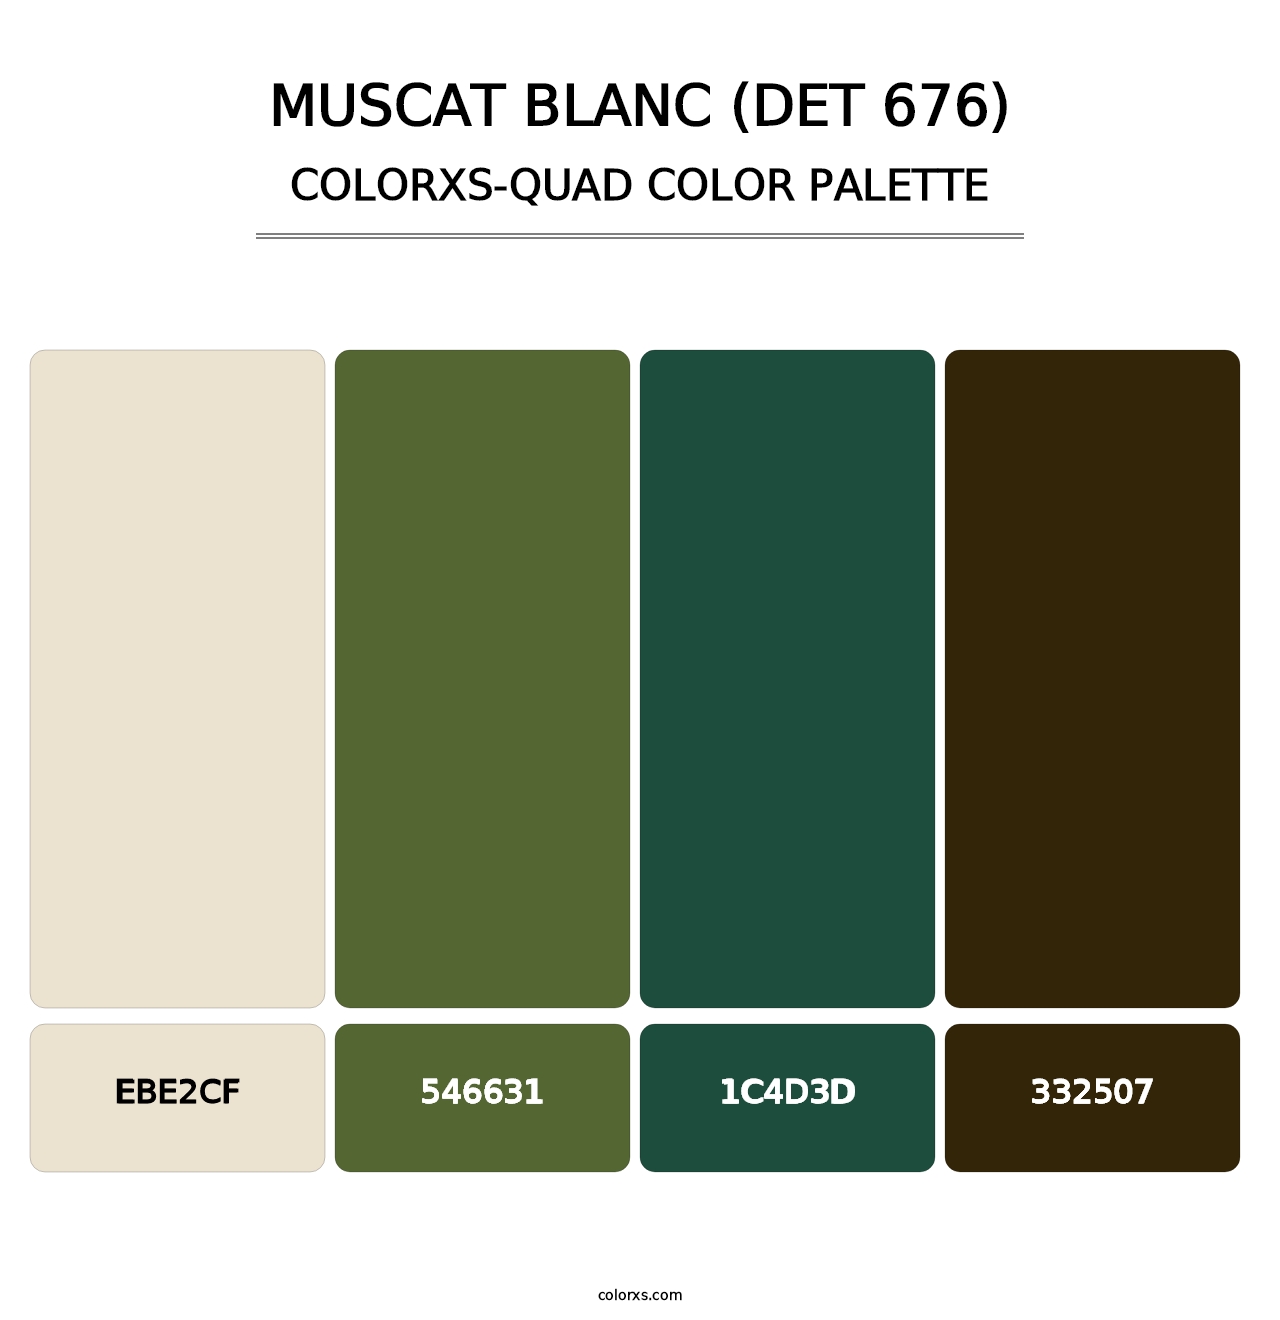 Muscat Blanc (DET 676) - Colorxs Quad Palette